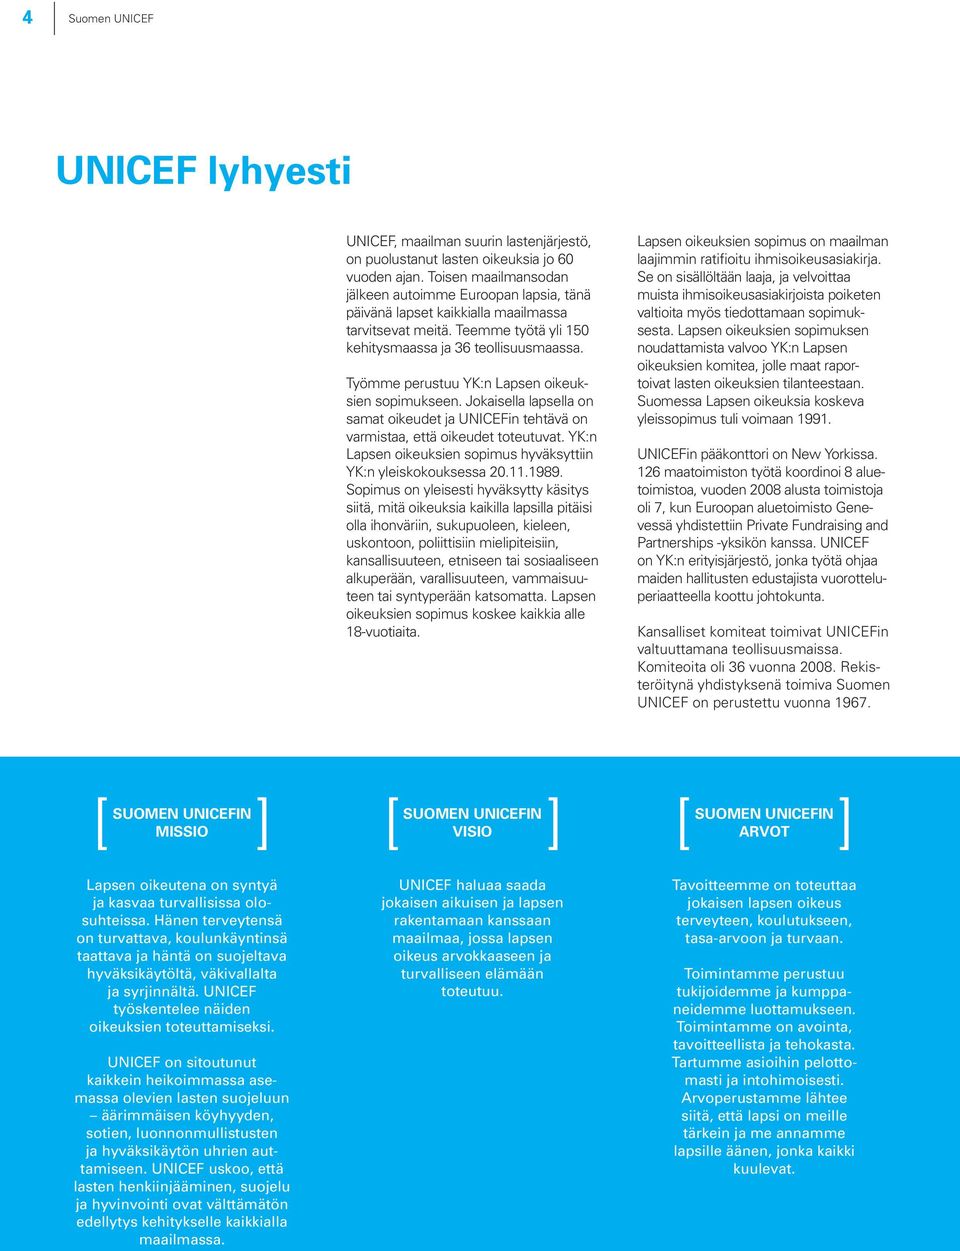 Työmme perustuu YK:n Lapsen oikeuksien sopimukseen. Jokaisella lapsella on samat oikeudet ja UNICEFin tehtävä on varmistaa, että oikeudet toteutuvat.